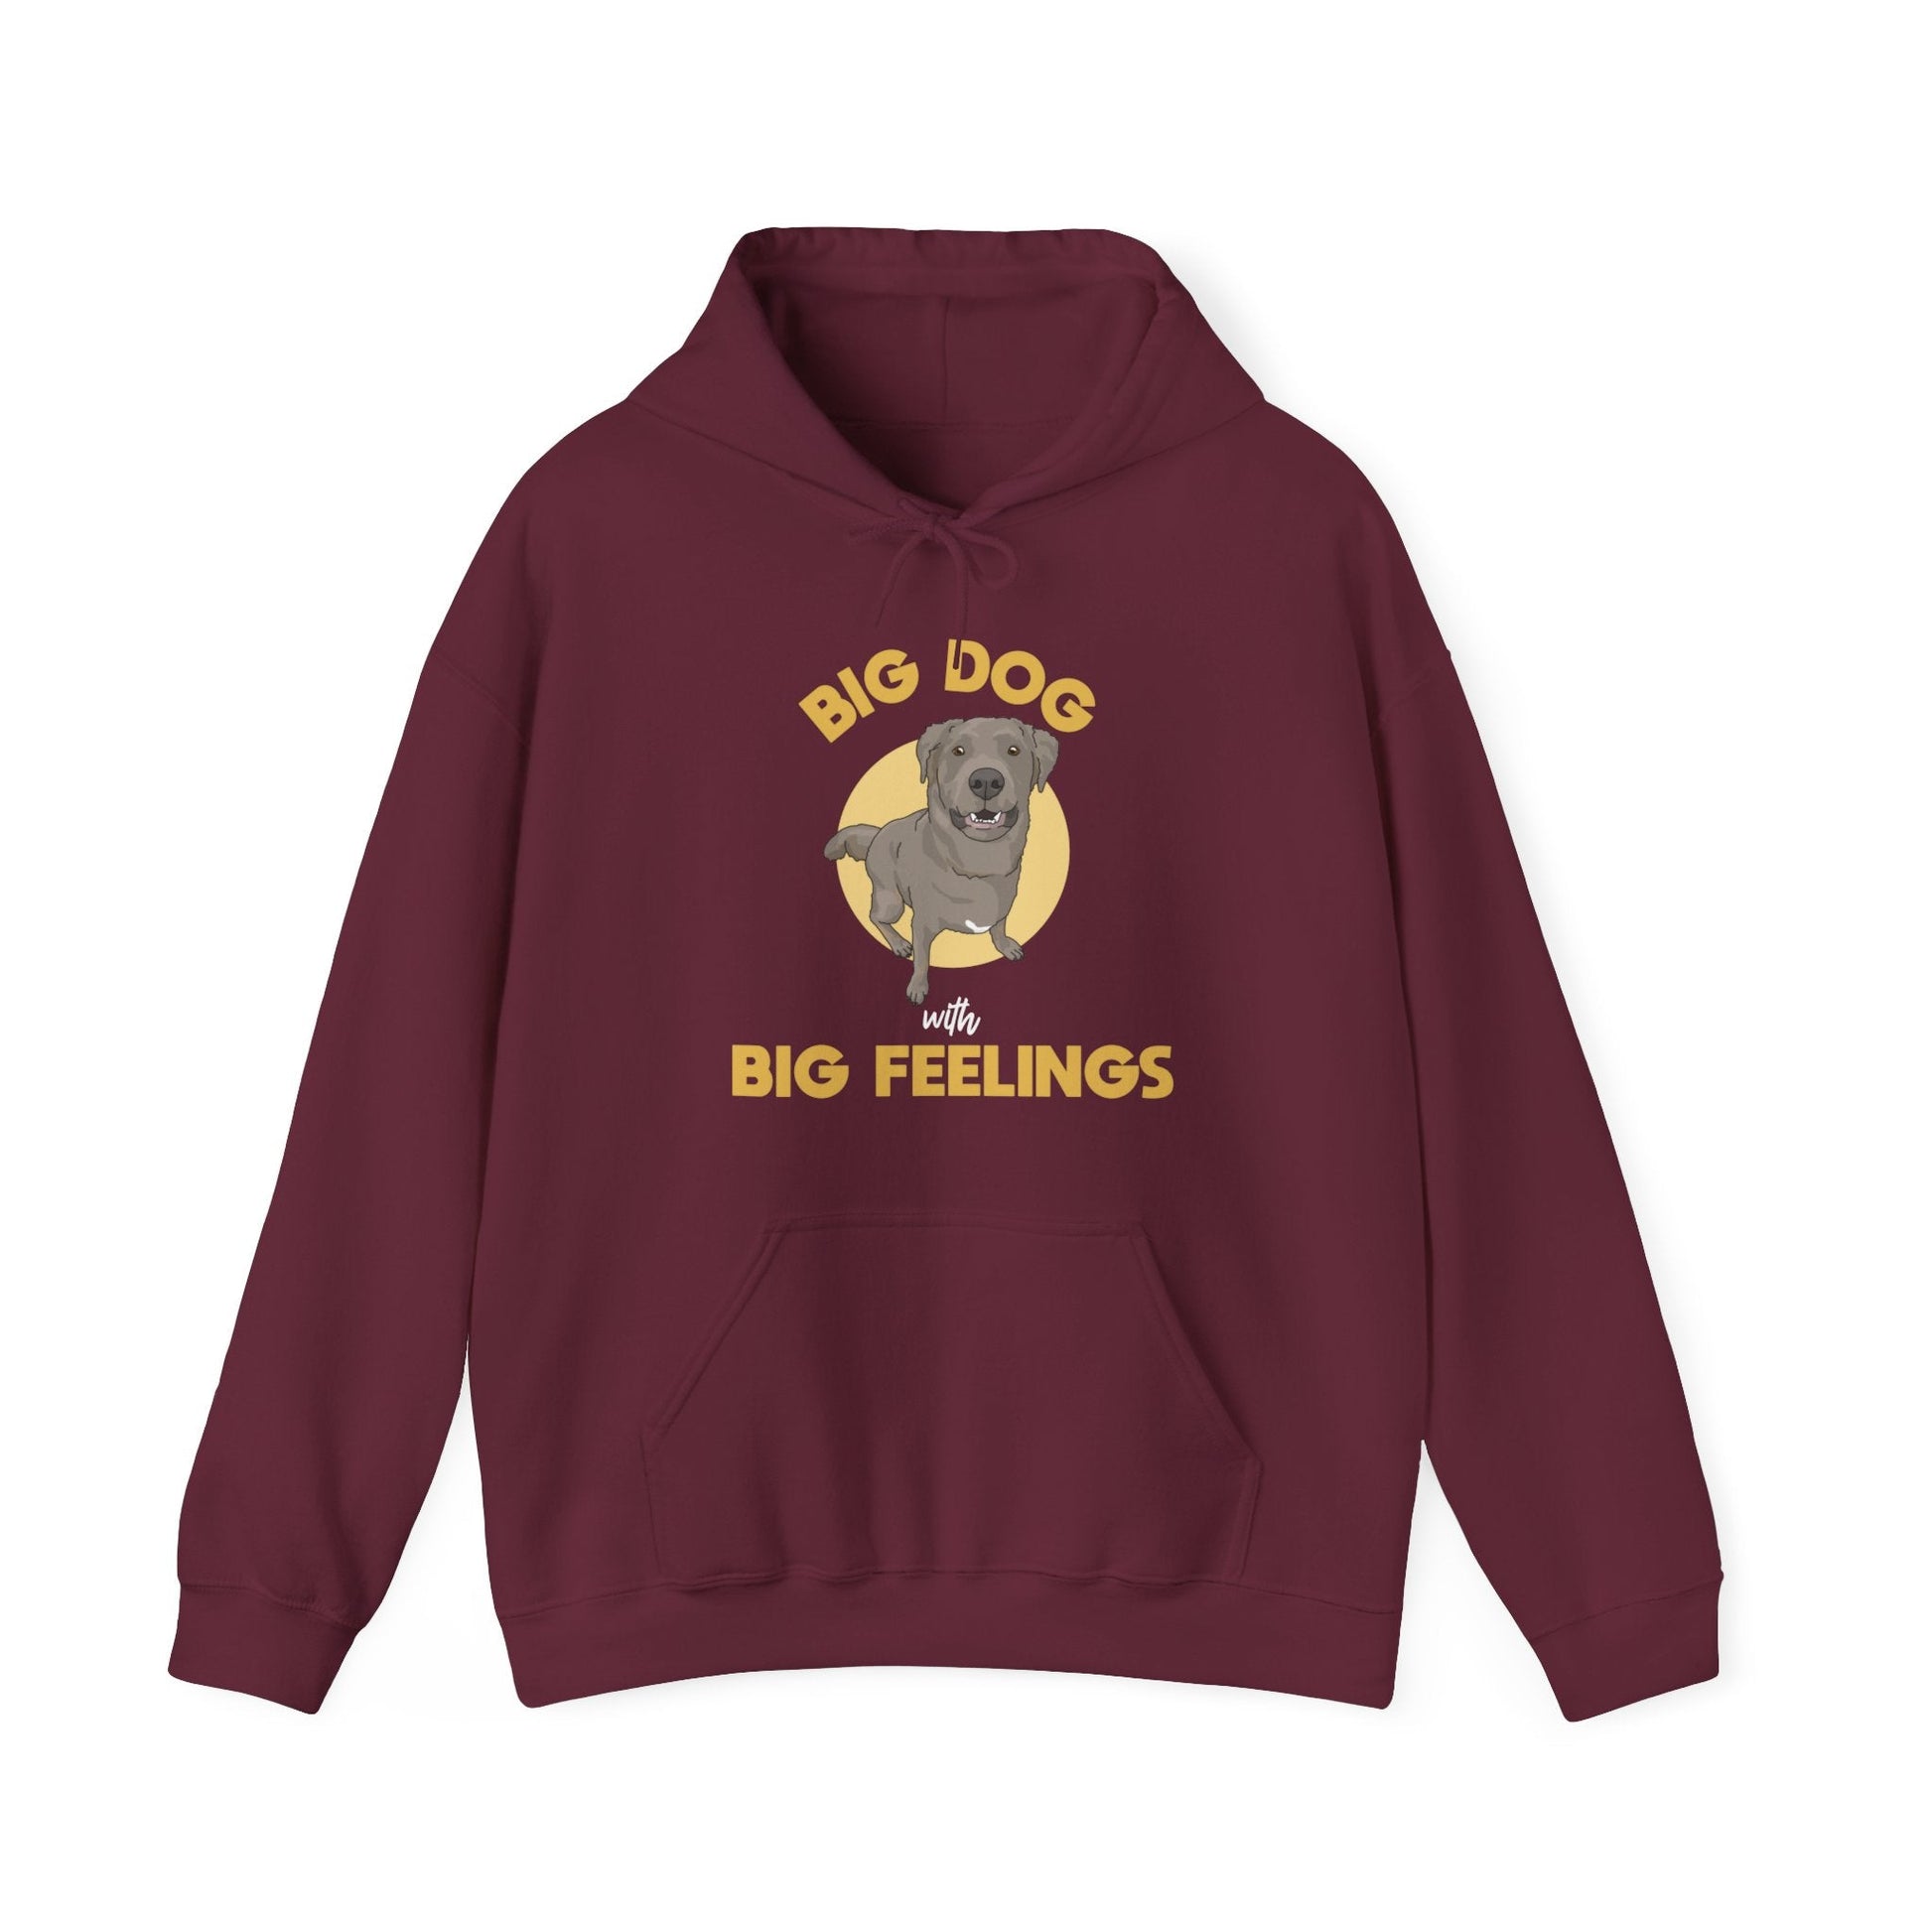 Big Dog With Big Feelings | Hooded Sweatshirt - Detezi Designs-55135668042815186045